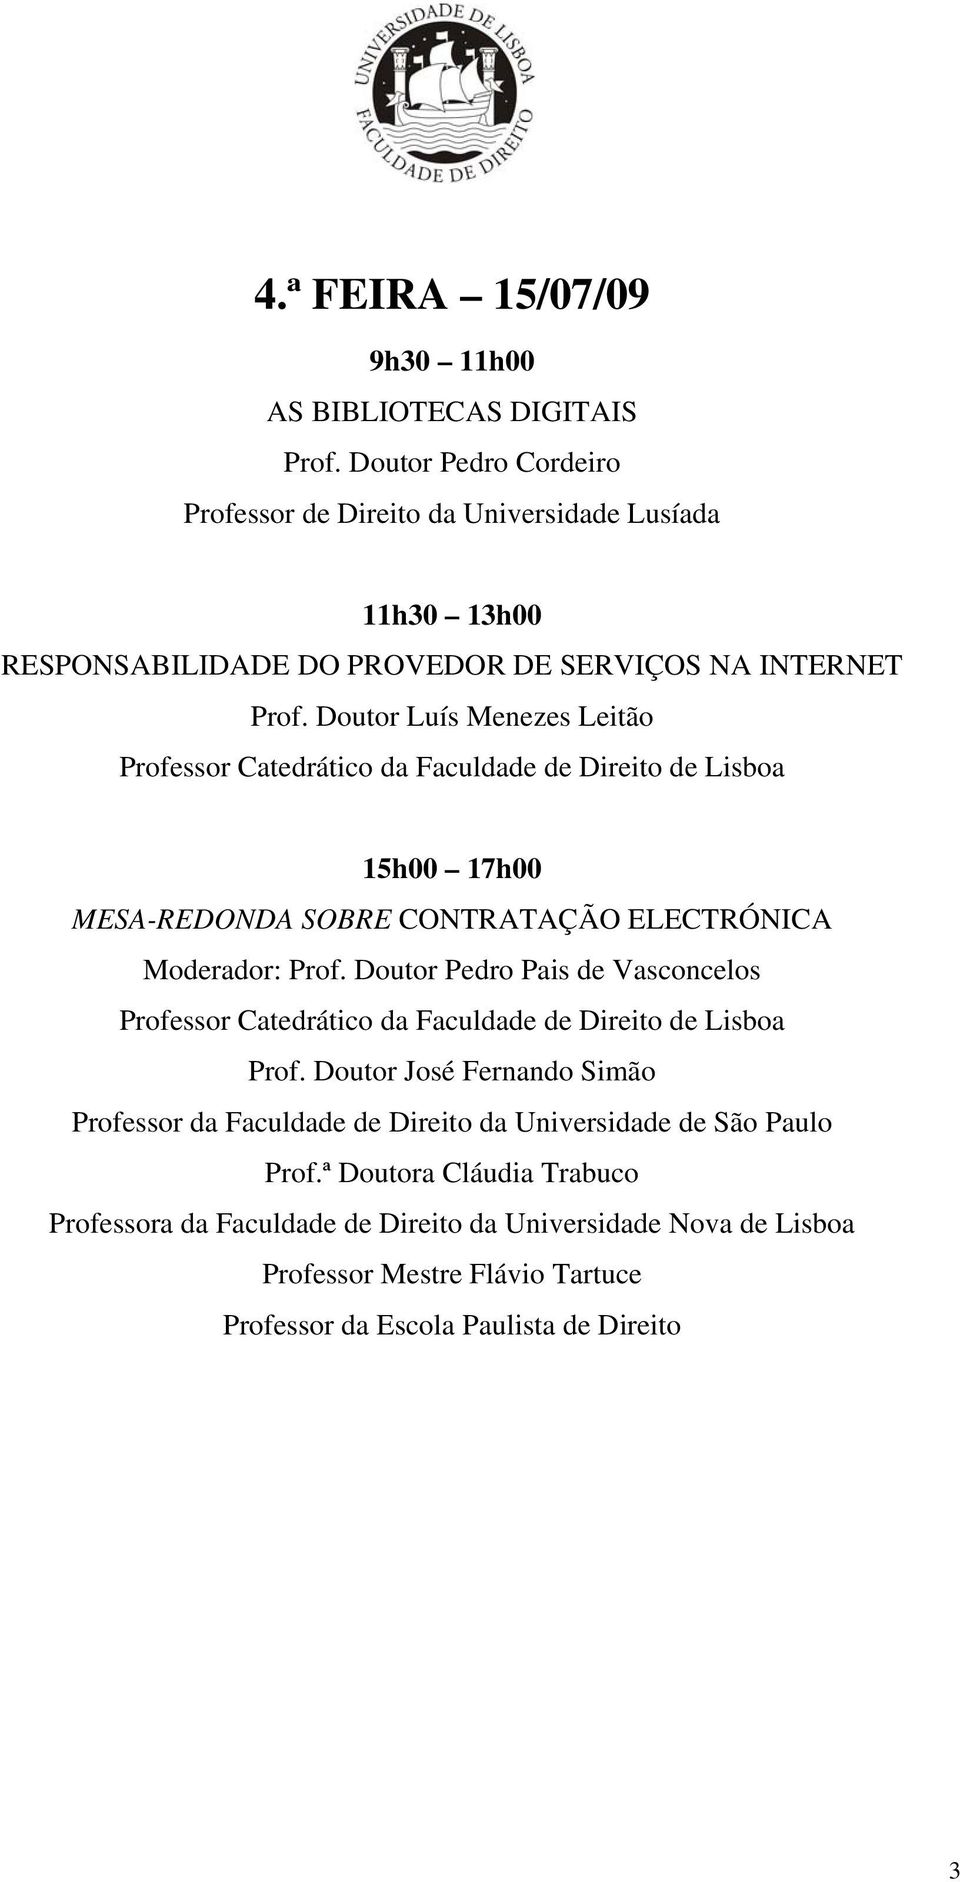 Doutor Luís Menezes Leitão 15h00 17h00 MESA-REDONDA SOBRE CONTRATAÇÃO ELECTRÓNICA Moderador: Prof. Doutor Pedro Pais de Vasconcelos Prof.